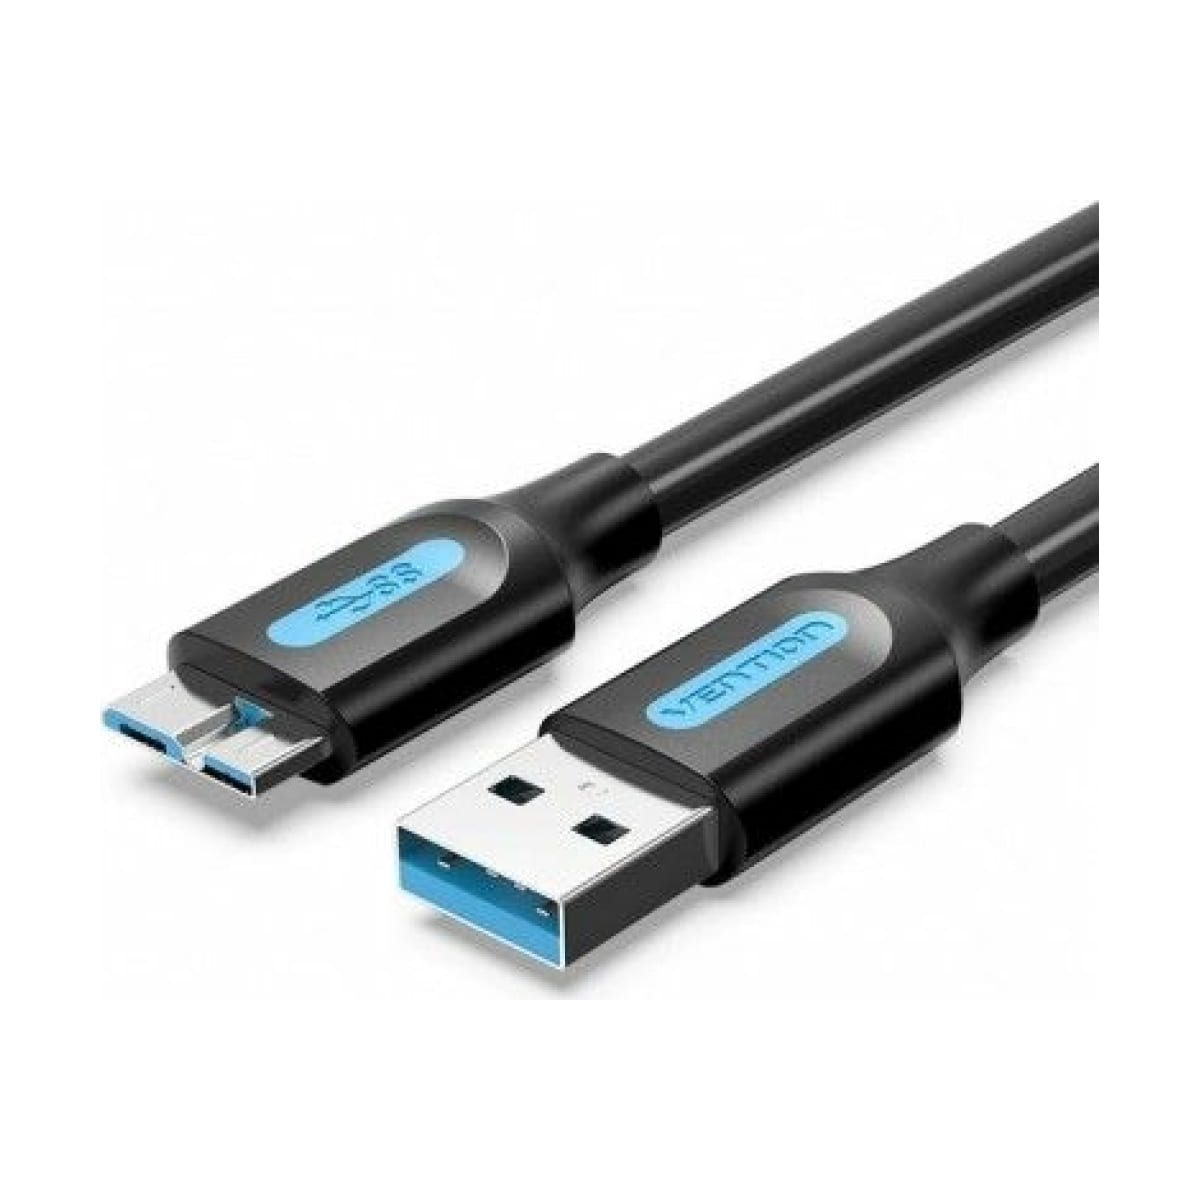 Кабель Vention USB 3.0 AM/micro B - 0,5м. (COPBD) usb зарядный кабель для samsung galaxy tab2 gt p3113ts tablet p3110 p3100 p5100 p5110 p6200 p7500 n8000 p6800 p1000 кабель для синхронизации данных